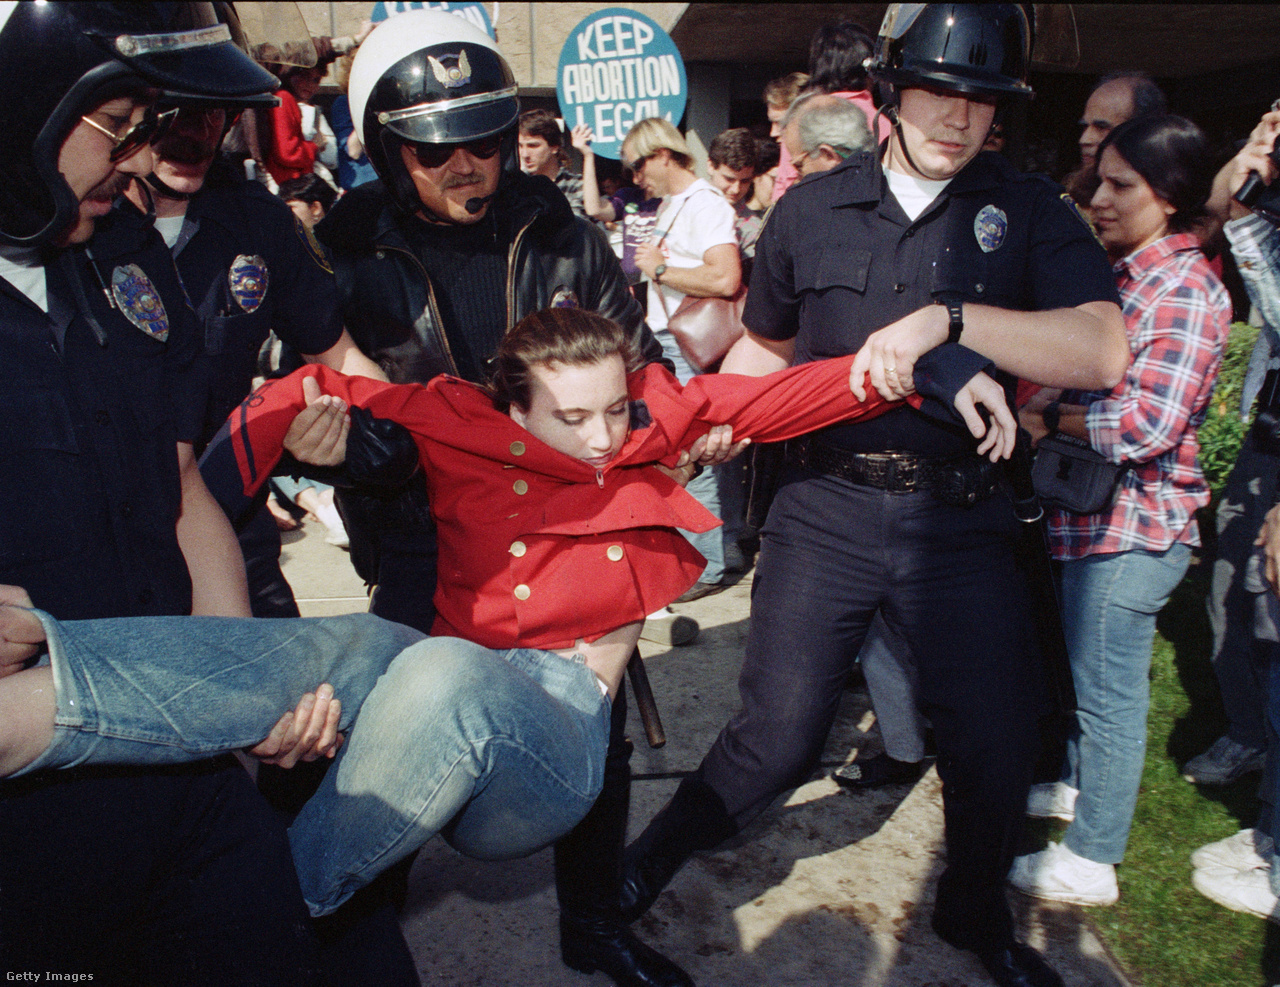 Cypress, Egyesült Államok, 1989. március 23. A rendőrség letartóztatja az abortusz ellen tiltakozókat a Planned Parenthood szervezet létesítménye előtt